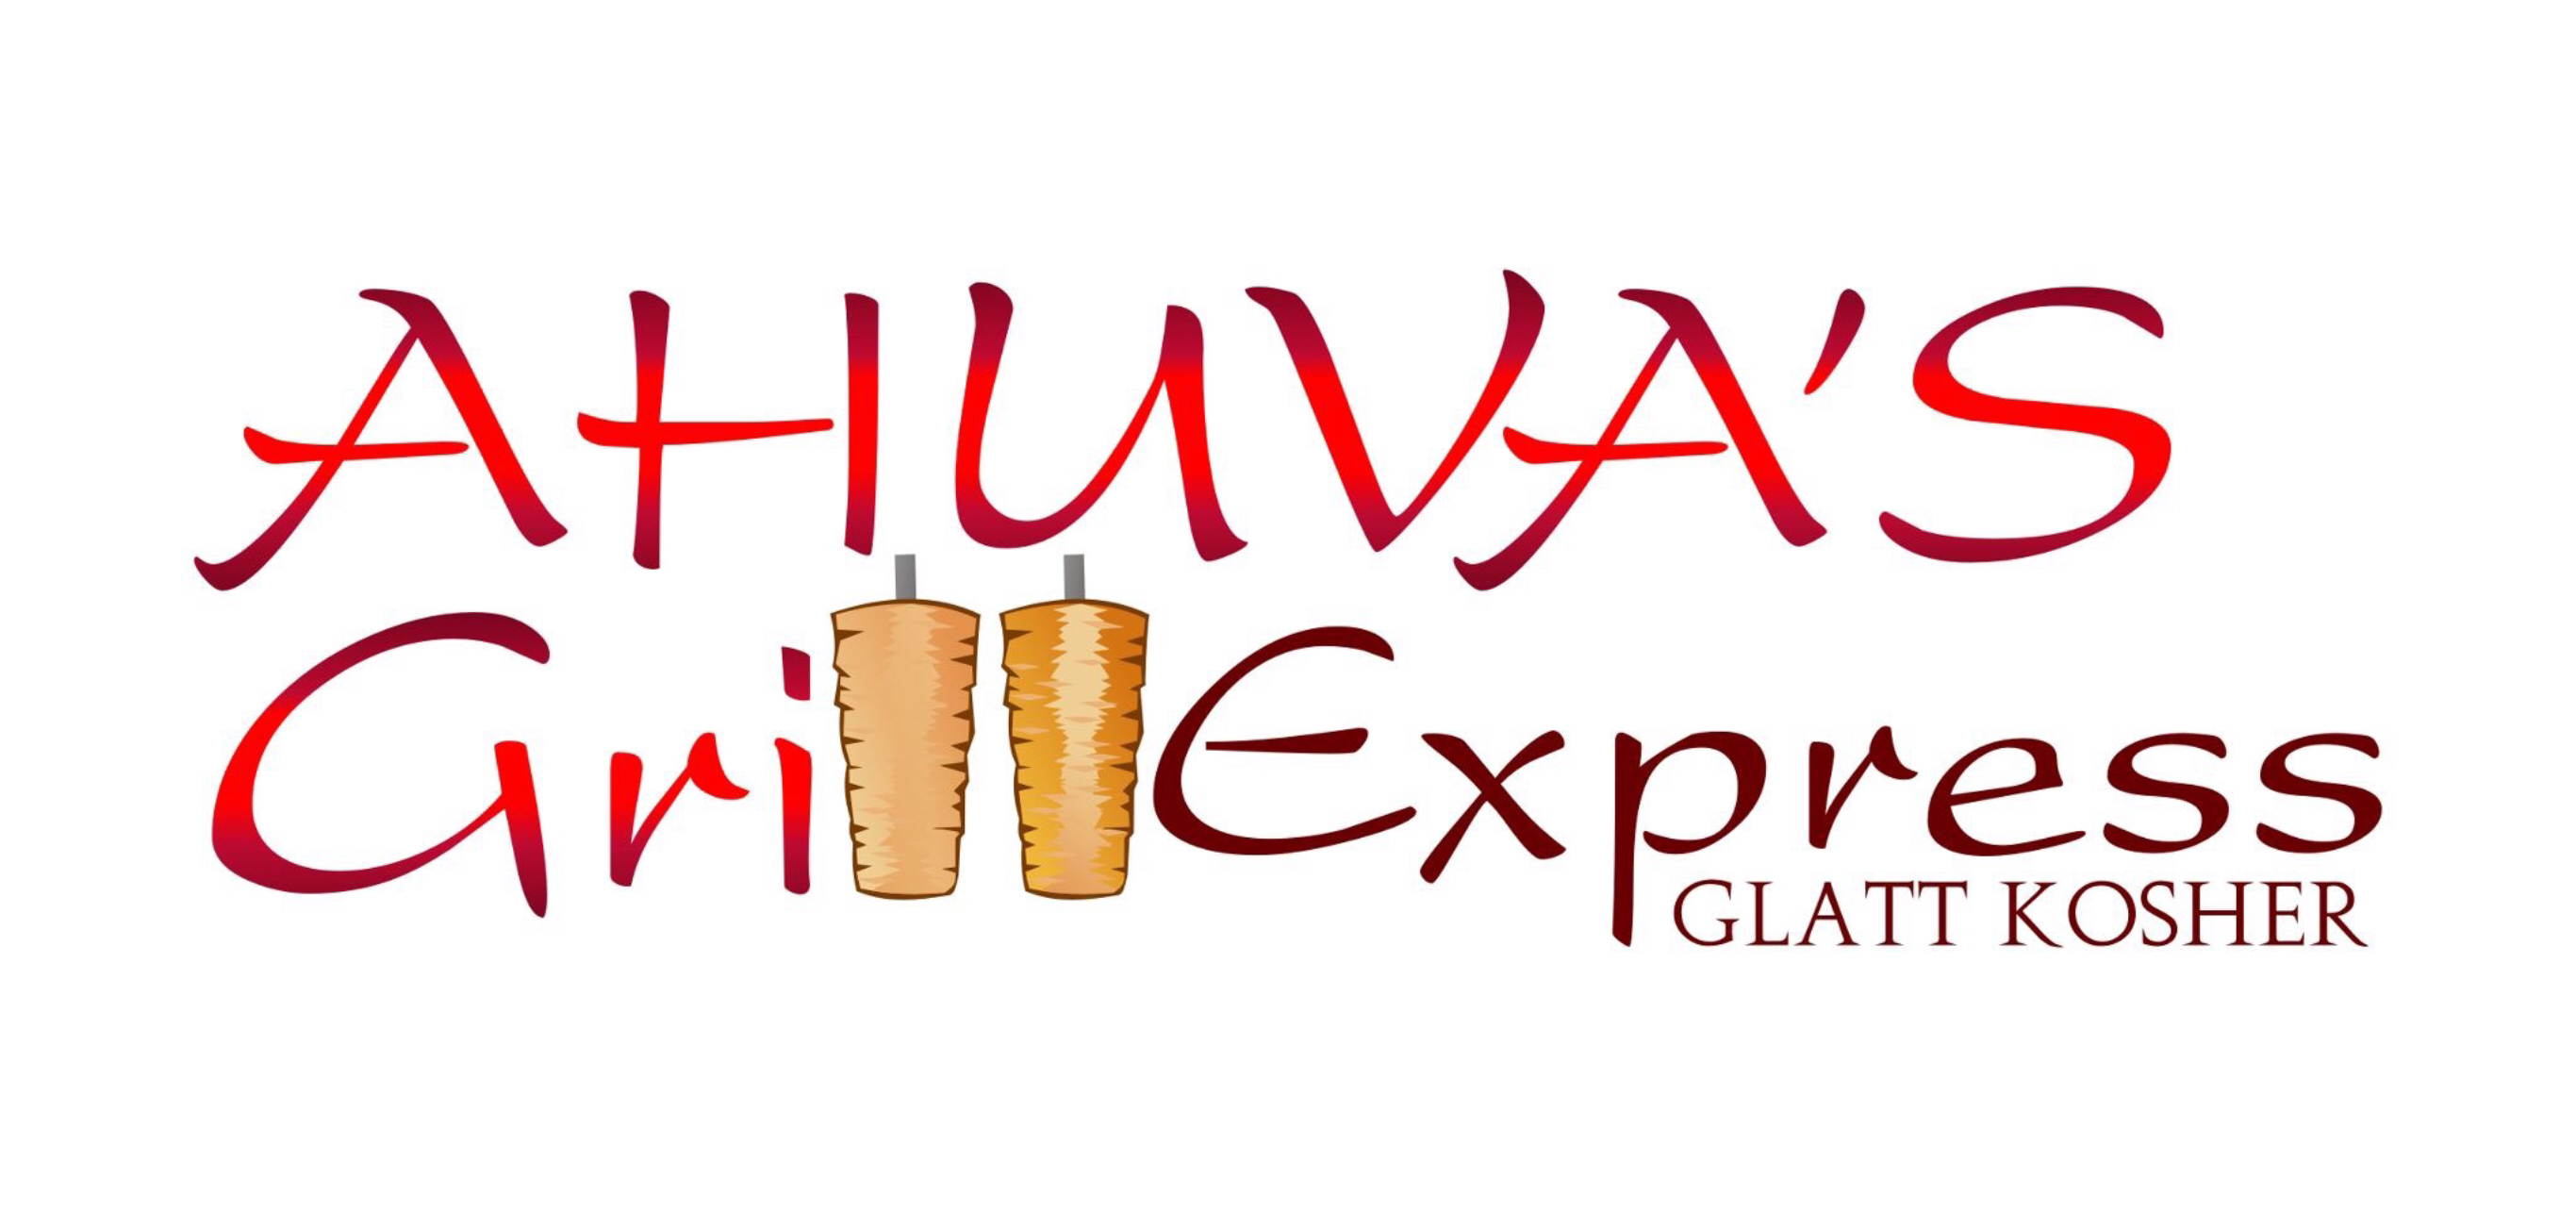 Ahuva’s Grill Express